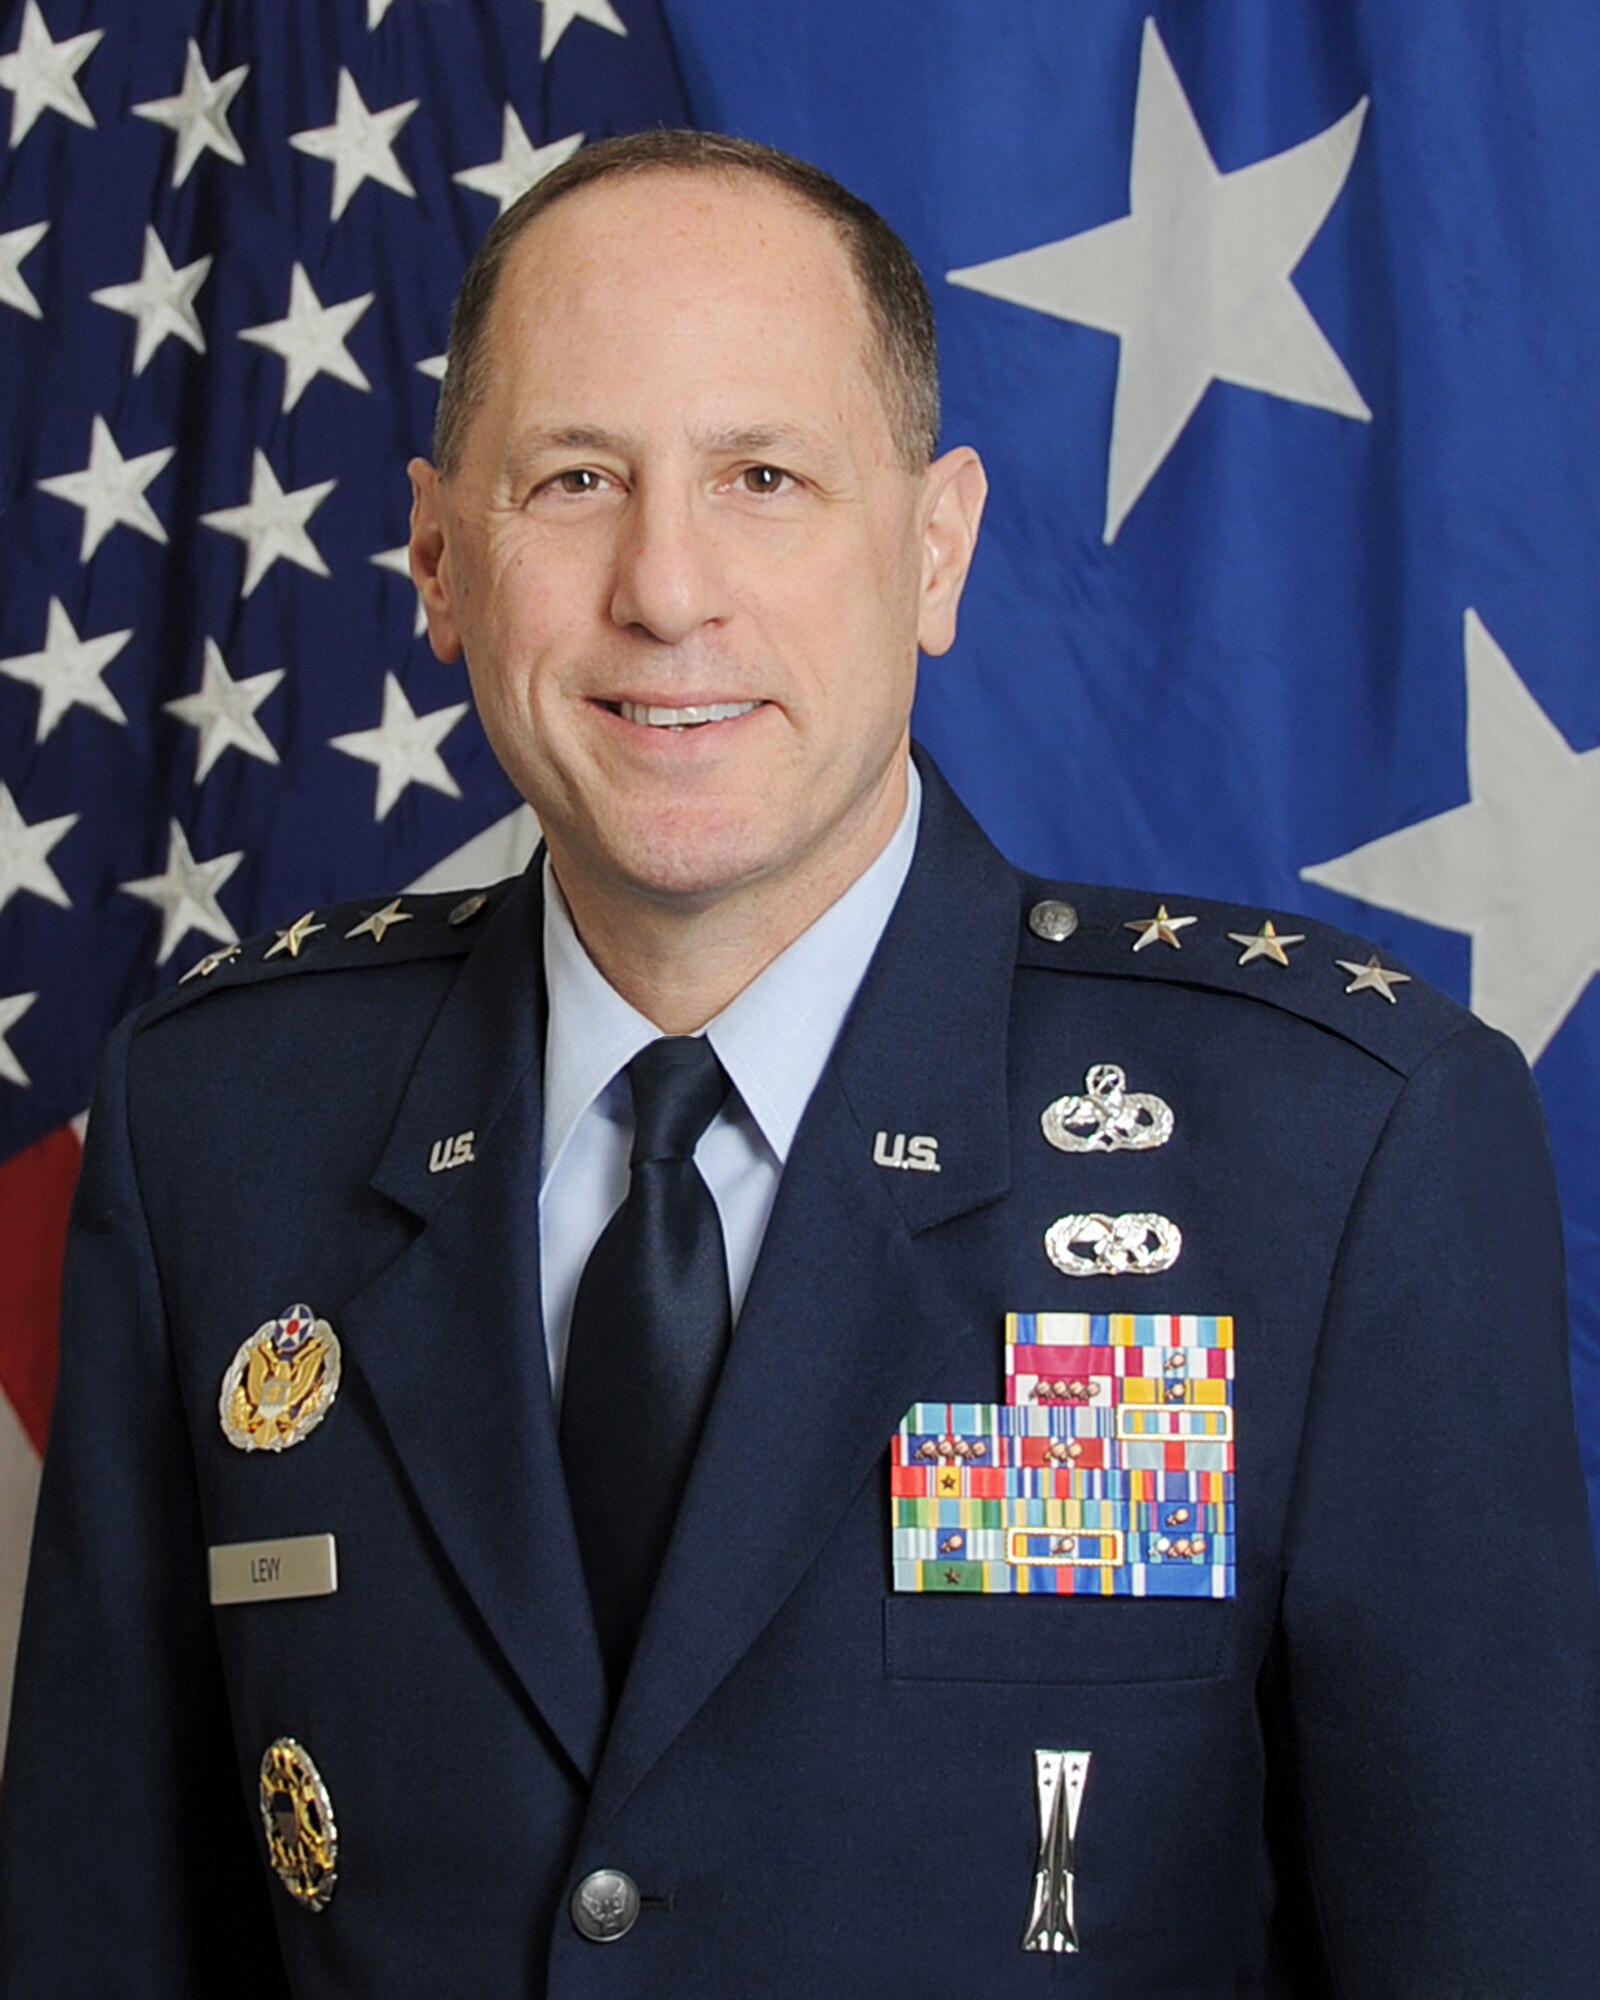 Lt. Gen. Levy